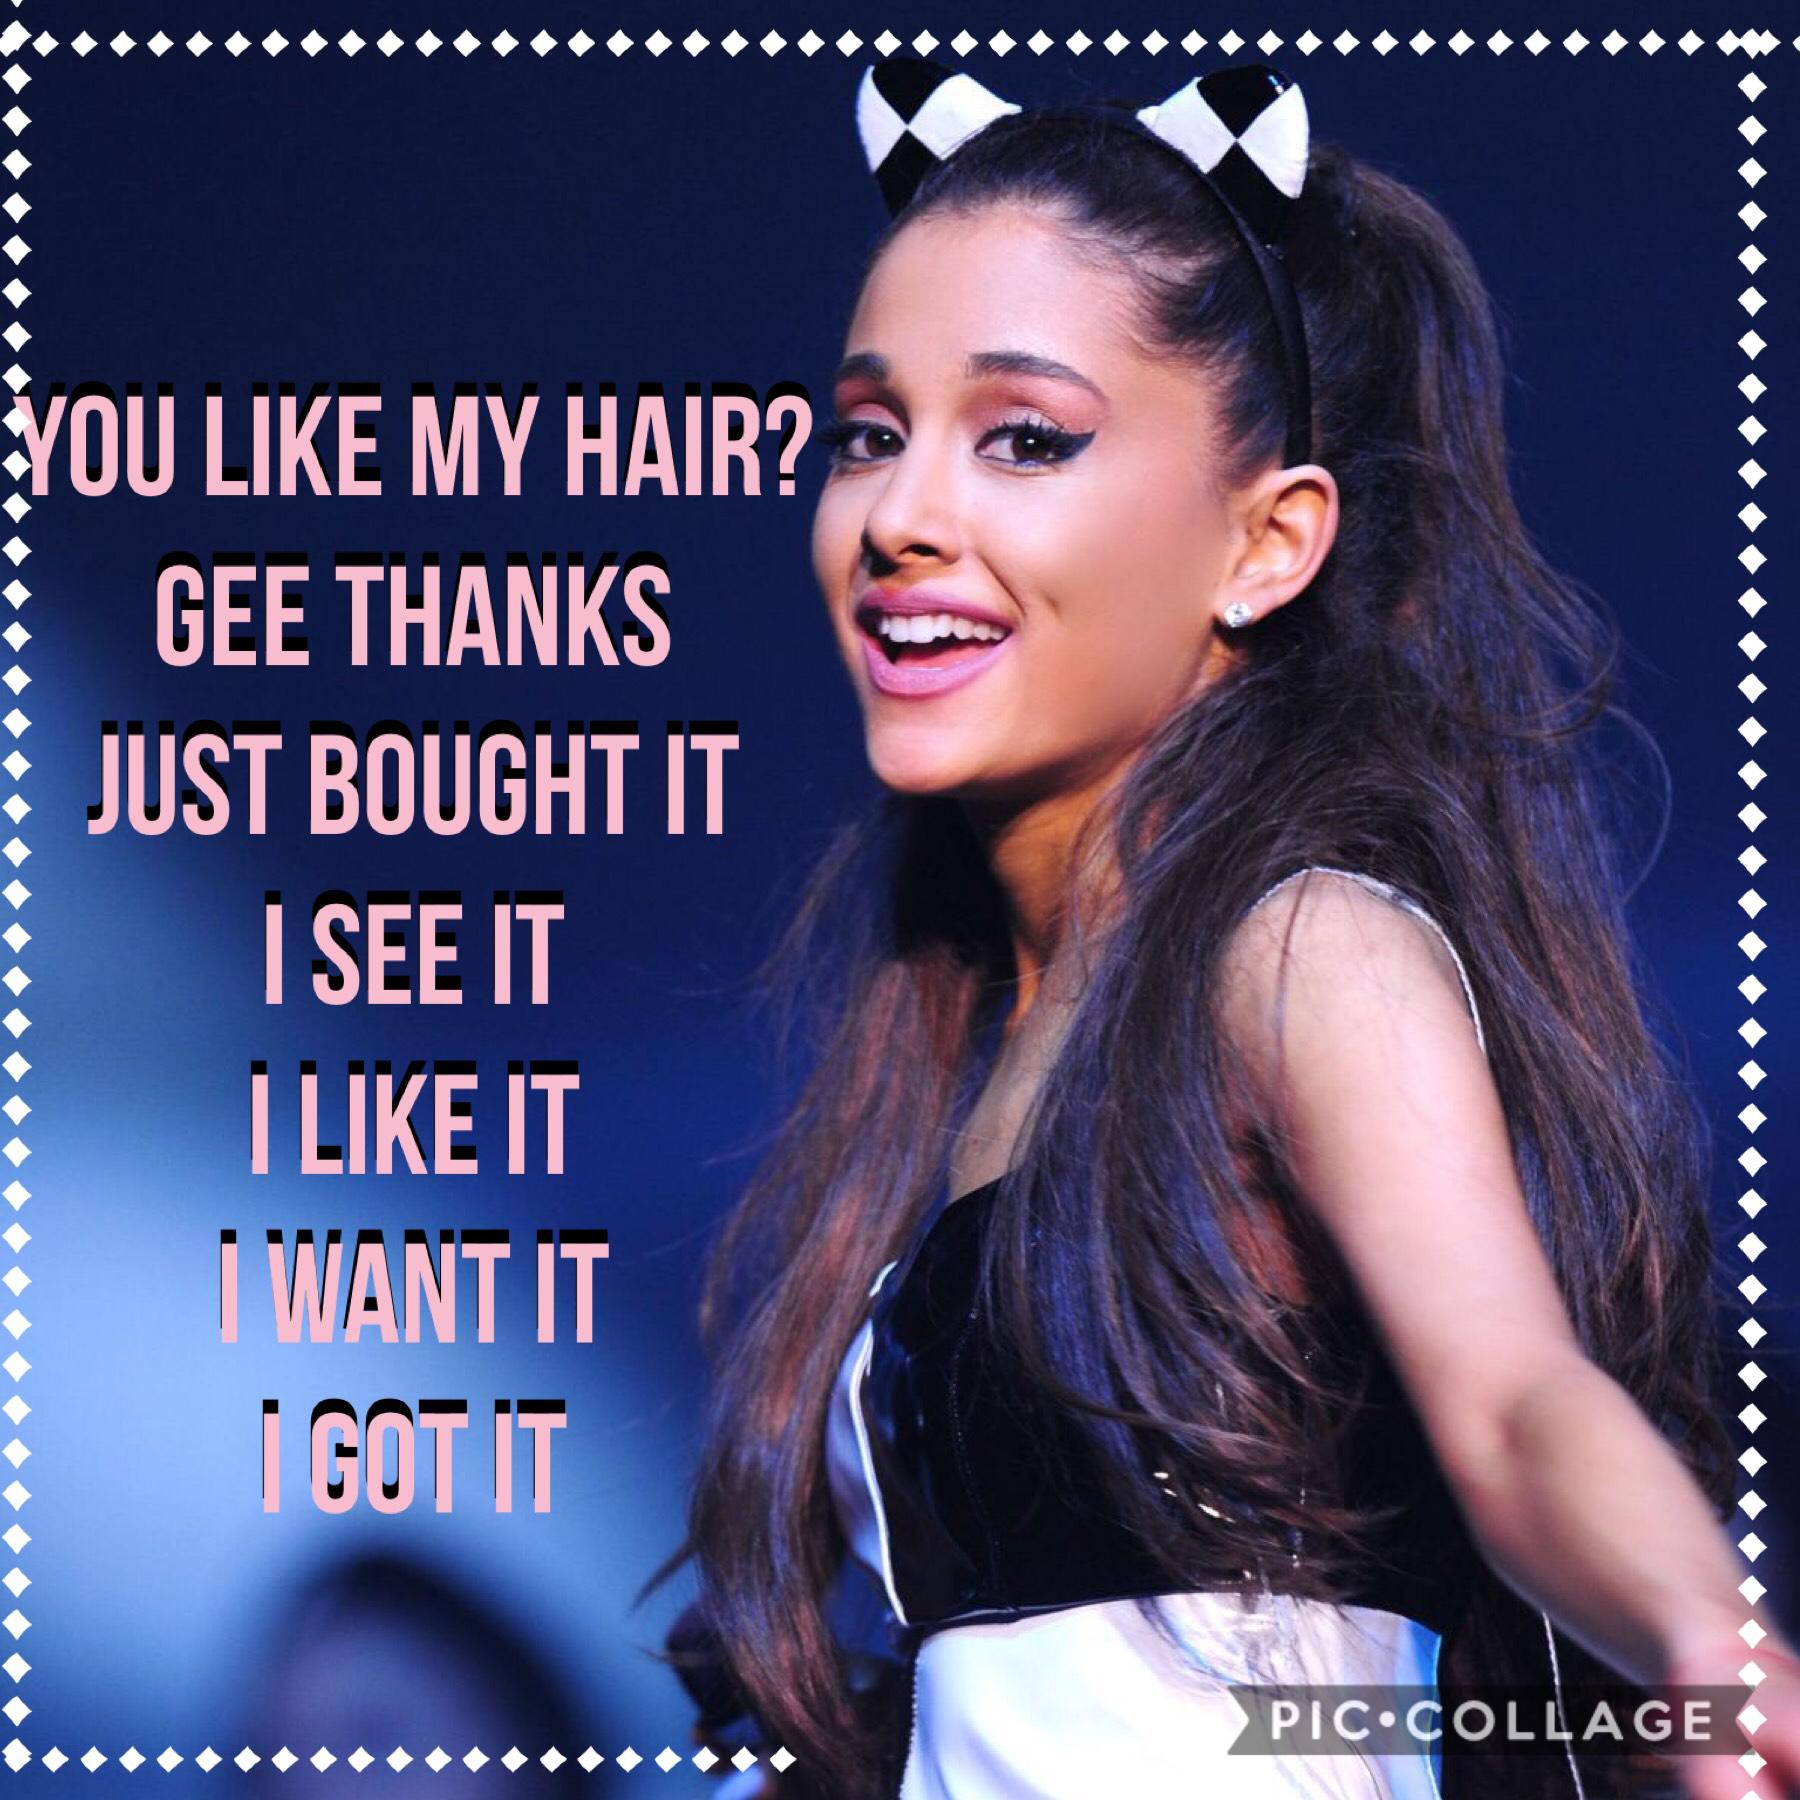 An Ariana grande edit! 